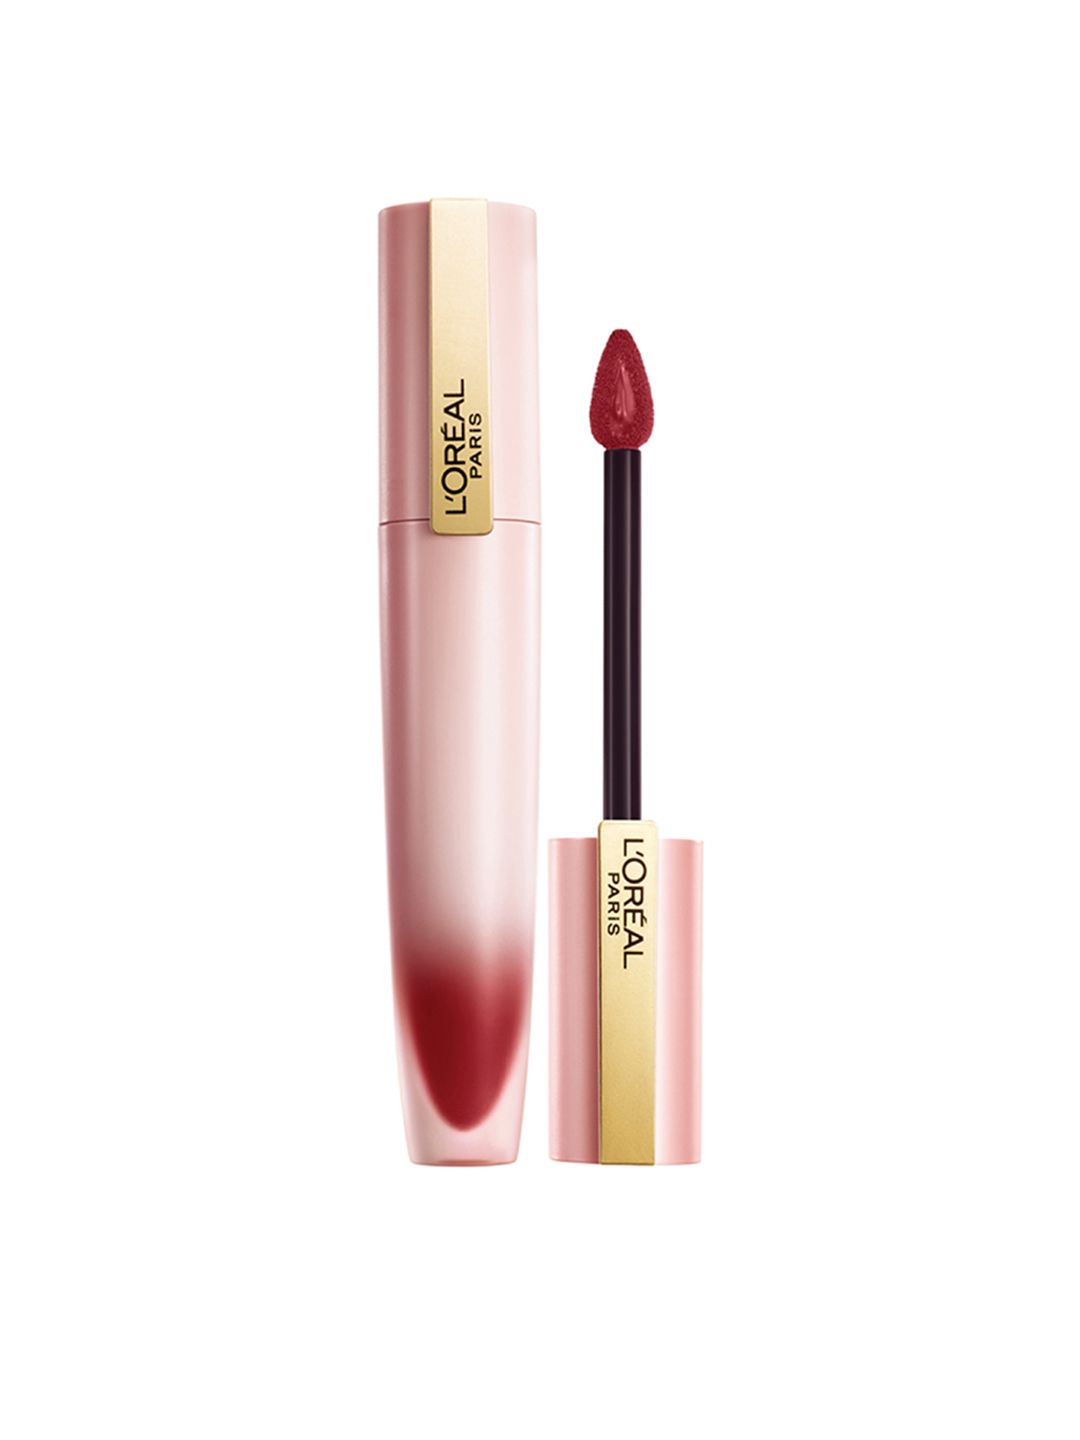 LOreal Paris Chiffon Signature Liquid Lipstick 7ml - Let Go 227 Price in India